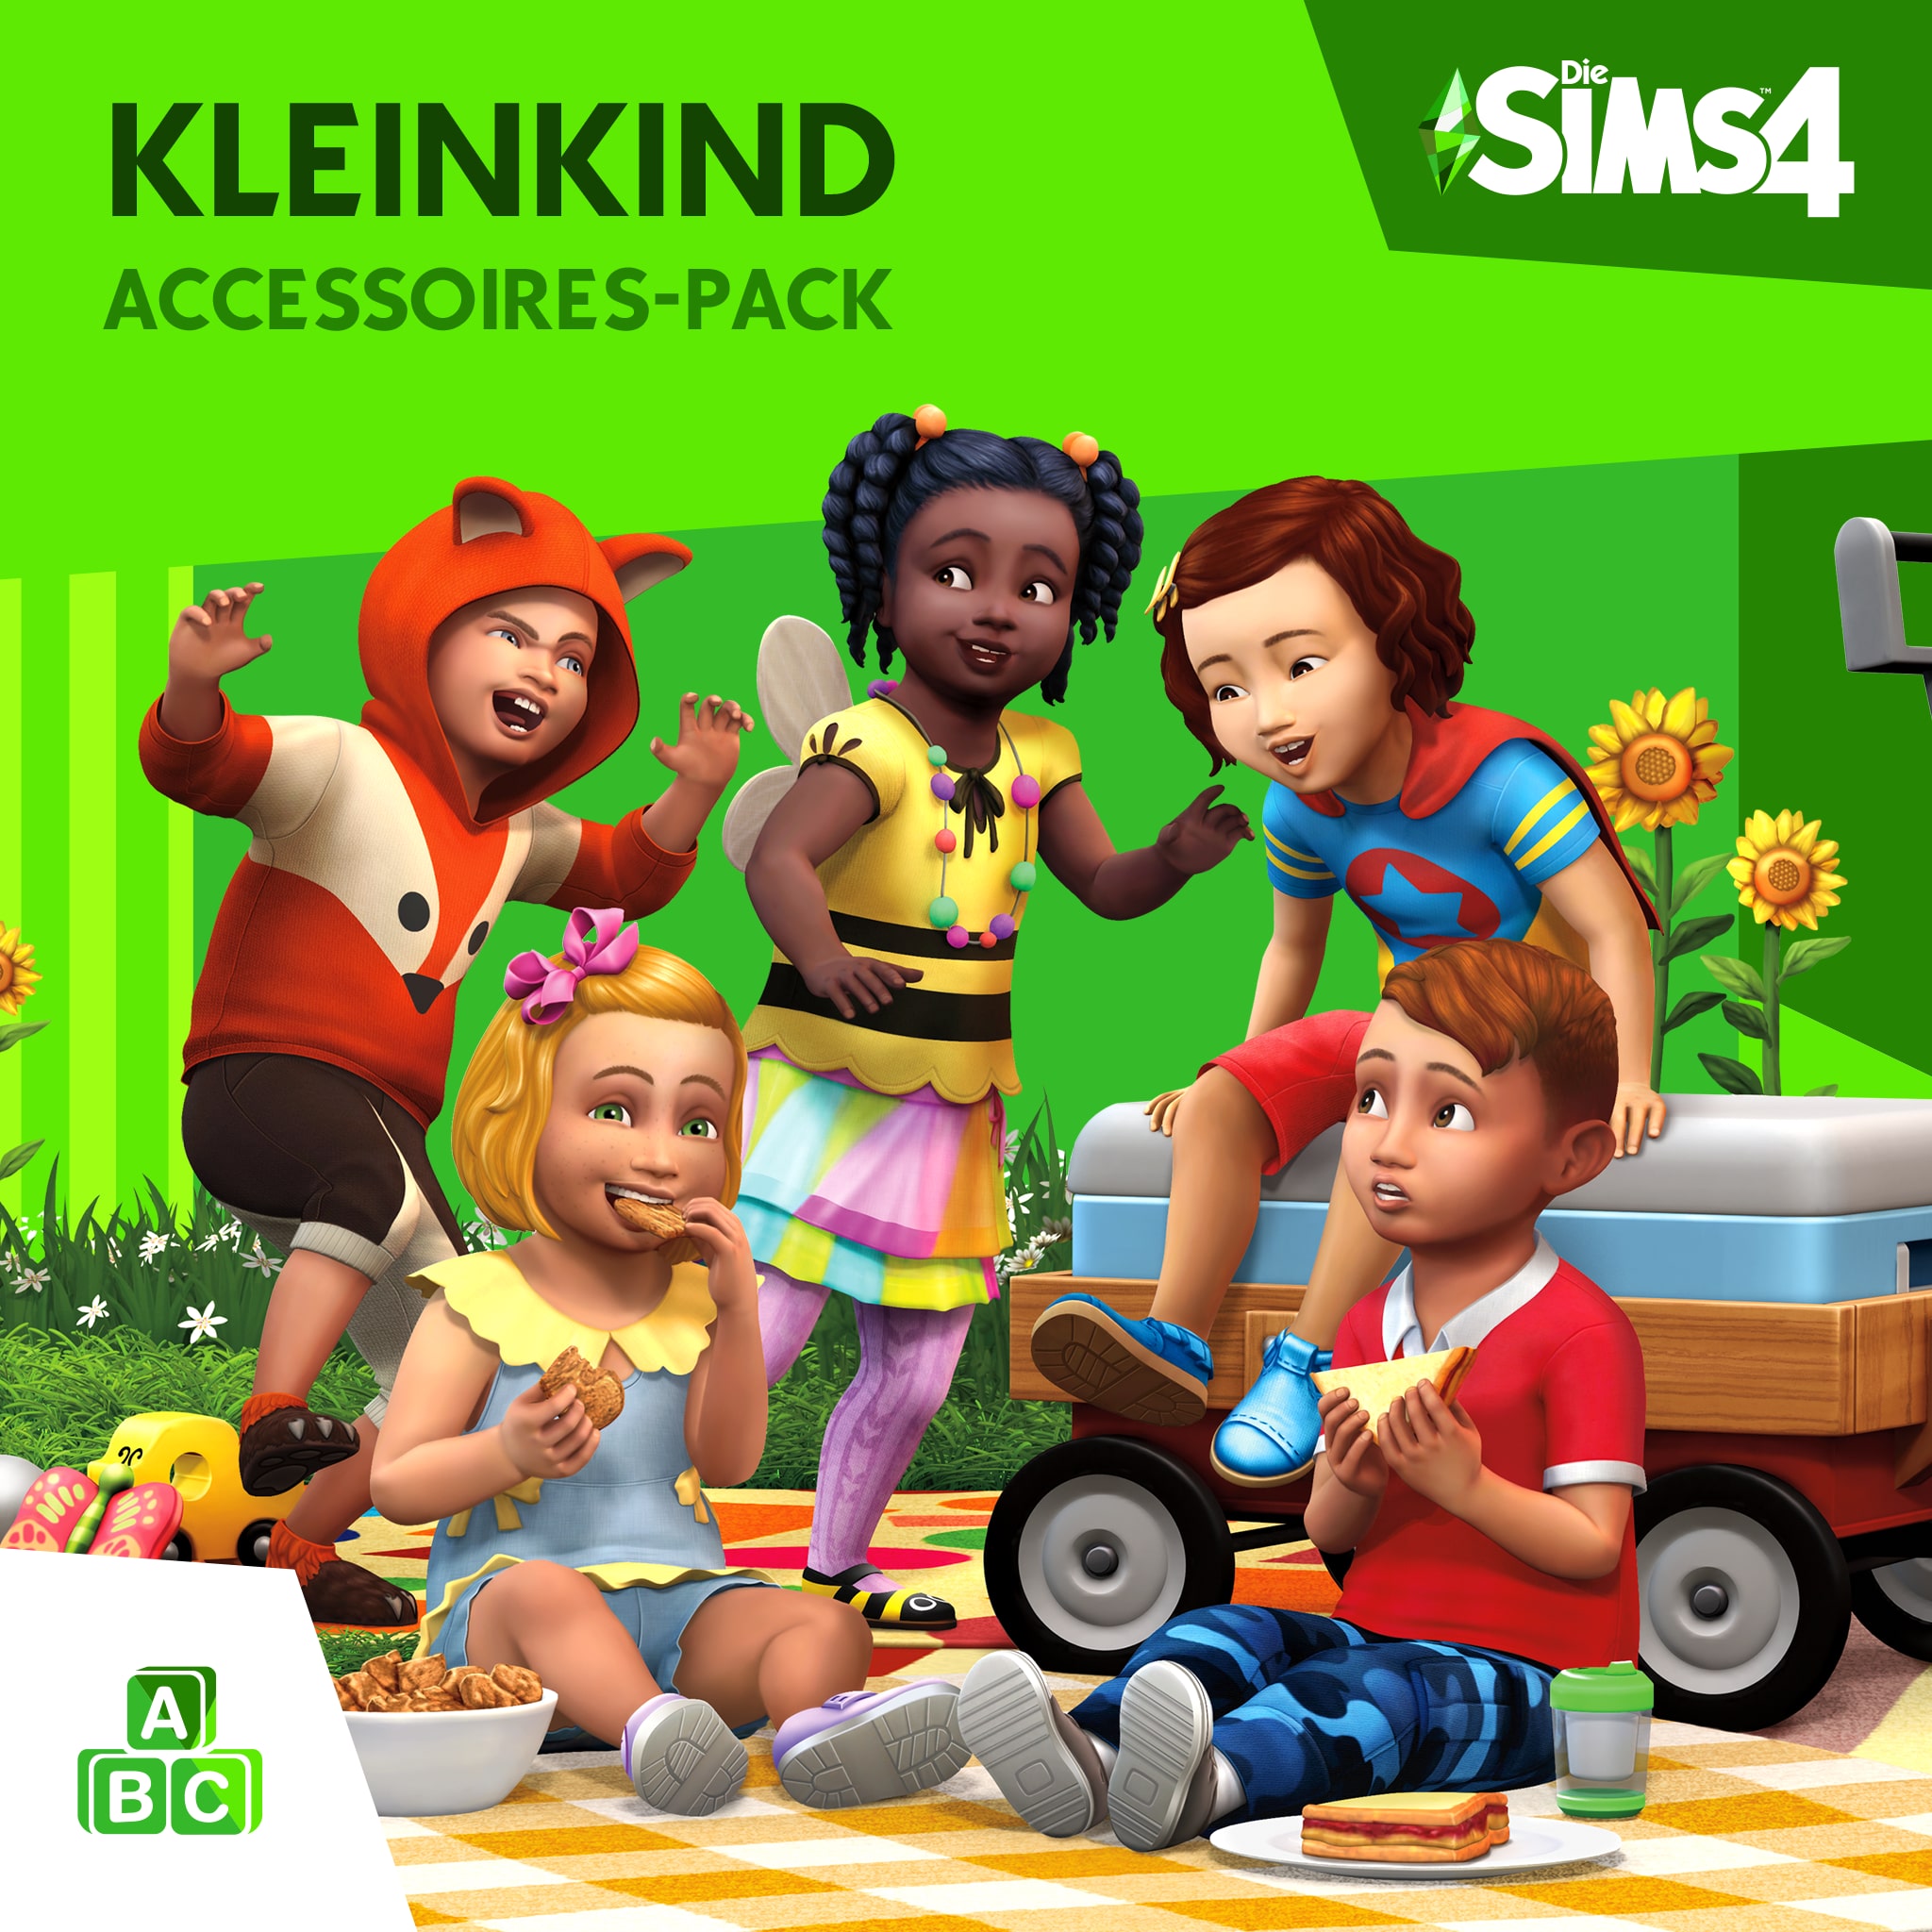 Die Sims™ 4 Kleinkind-Accessoires